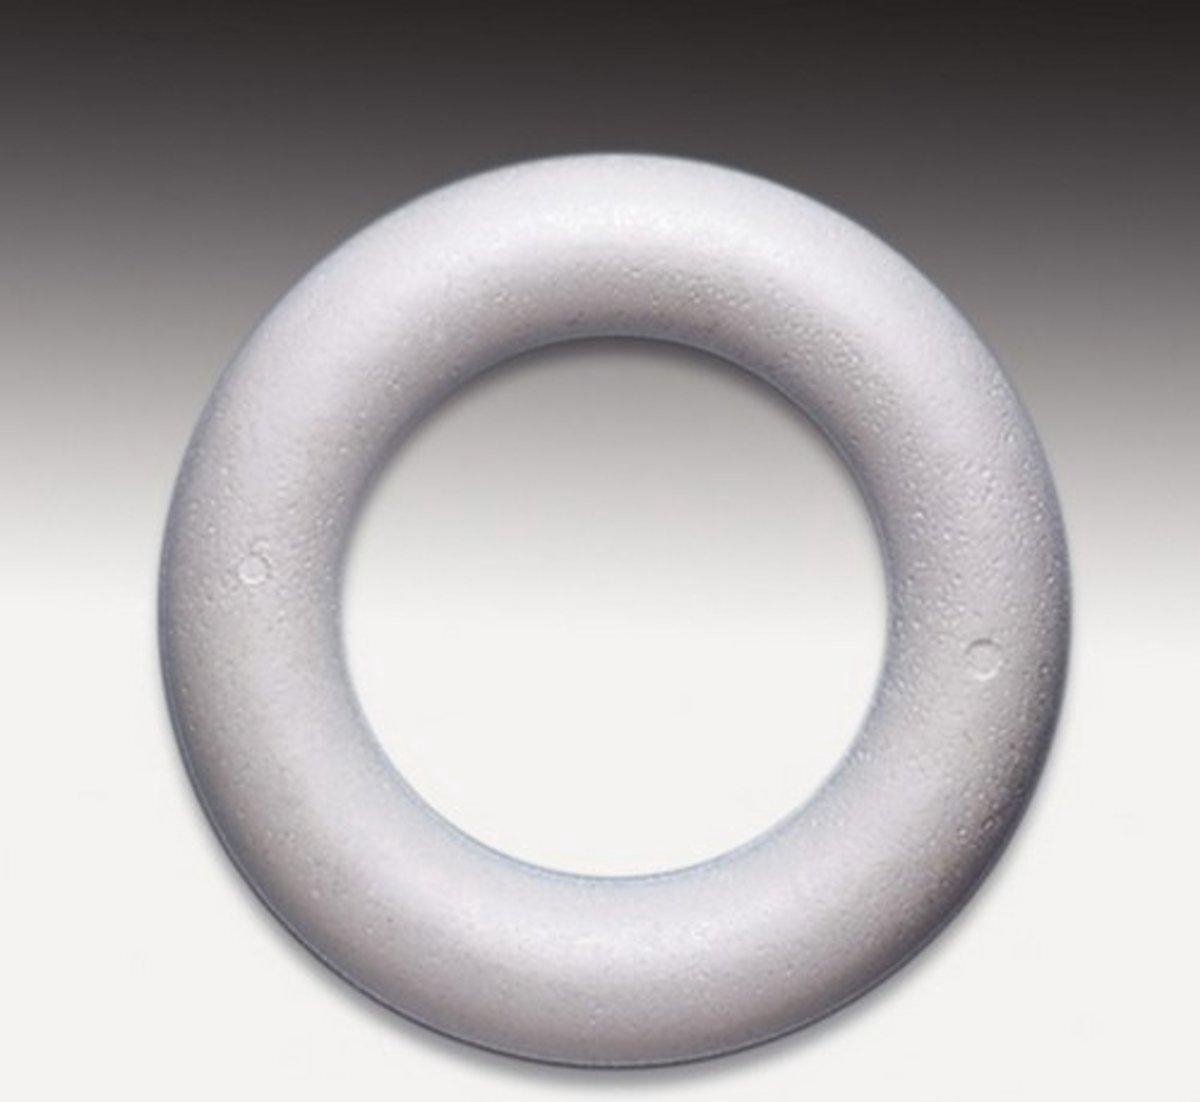 Styropor volle ring [ piepschuim ] 22 cm, 5 STUKS. LEUK VOOR KERSTKRANSEN.